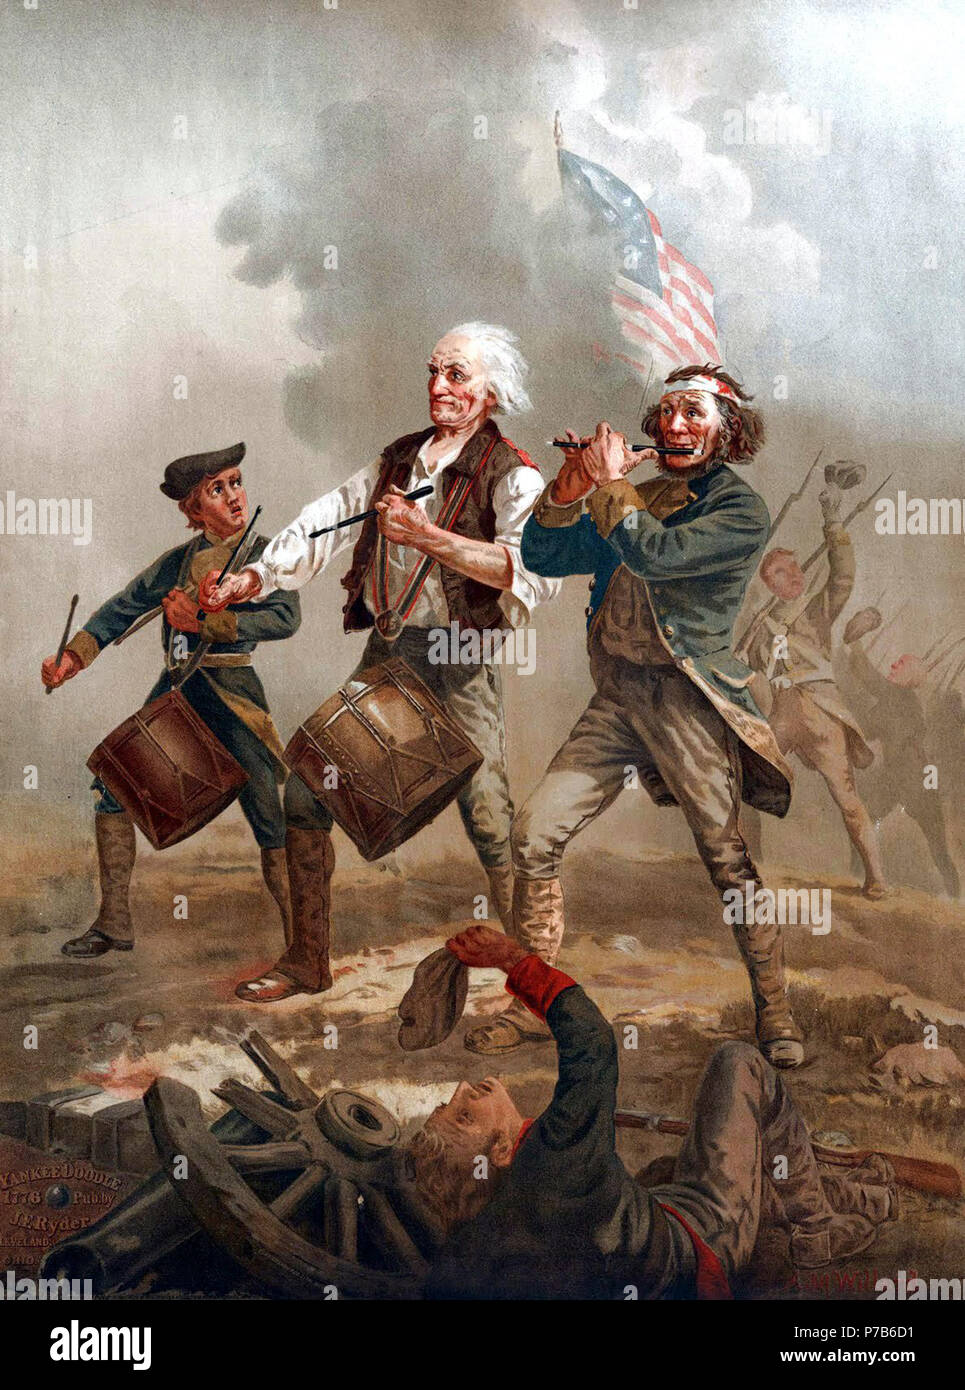 Ursprünglich berechtigt, Yankee Doodle, Dies ist eine von mehreren Versionen einer Szene von Archibald MacNeal Willard im späten neunzehnten Jahrhundert gemalt, die kam, als der Geist der '76 bekannt sein. Oft kopiert oder Parodiert, es ist eines der berühmtesten Bilder in Bezug auf den Amerikanischen Unabhängigkeitskrieg. Die lebensgroße Original hängt in Abbot Hall in Marblehead, Massachusetts. Die Flagge in der Malerei, oft angenommen das Betsy Ross Flagge zu sein, ist wirklich die Cowpens Flagge, während ein Wendepunkt im Krieg geflogen, der Schlacht von Cowpens. N/A76 Sprit von "76,2 Stockfoto